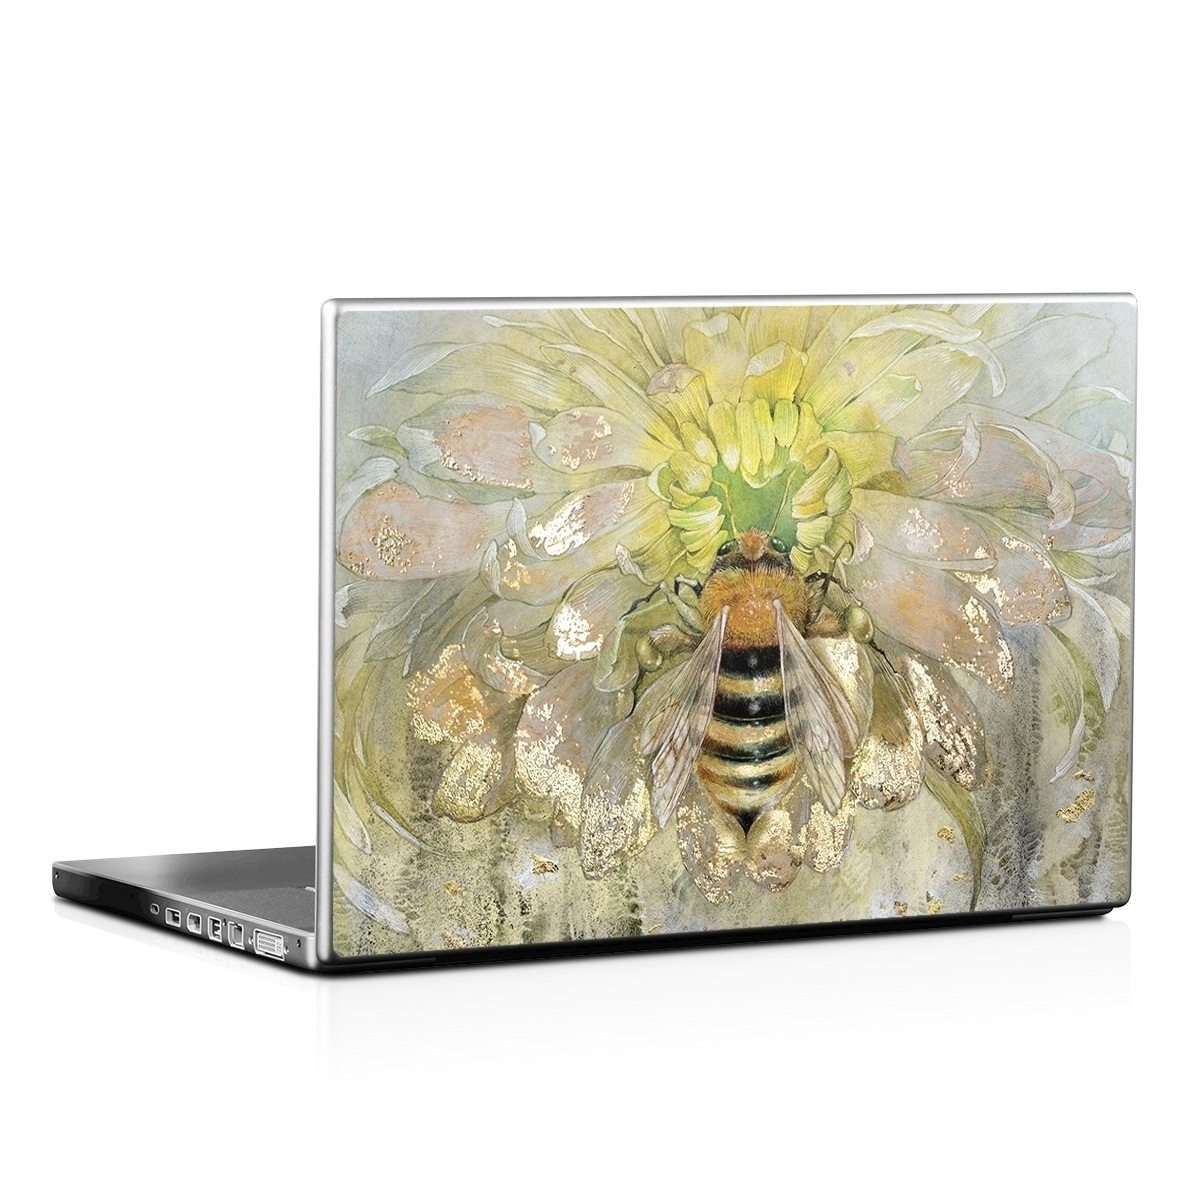 Laptop Skin - Honey Bee (Image 1)